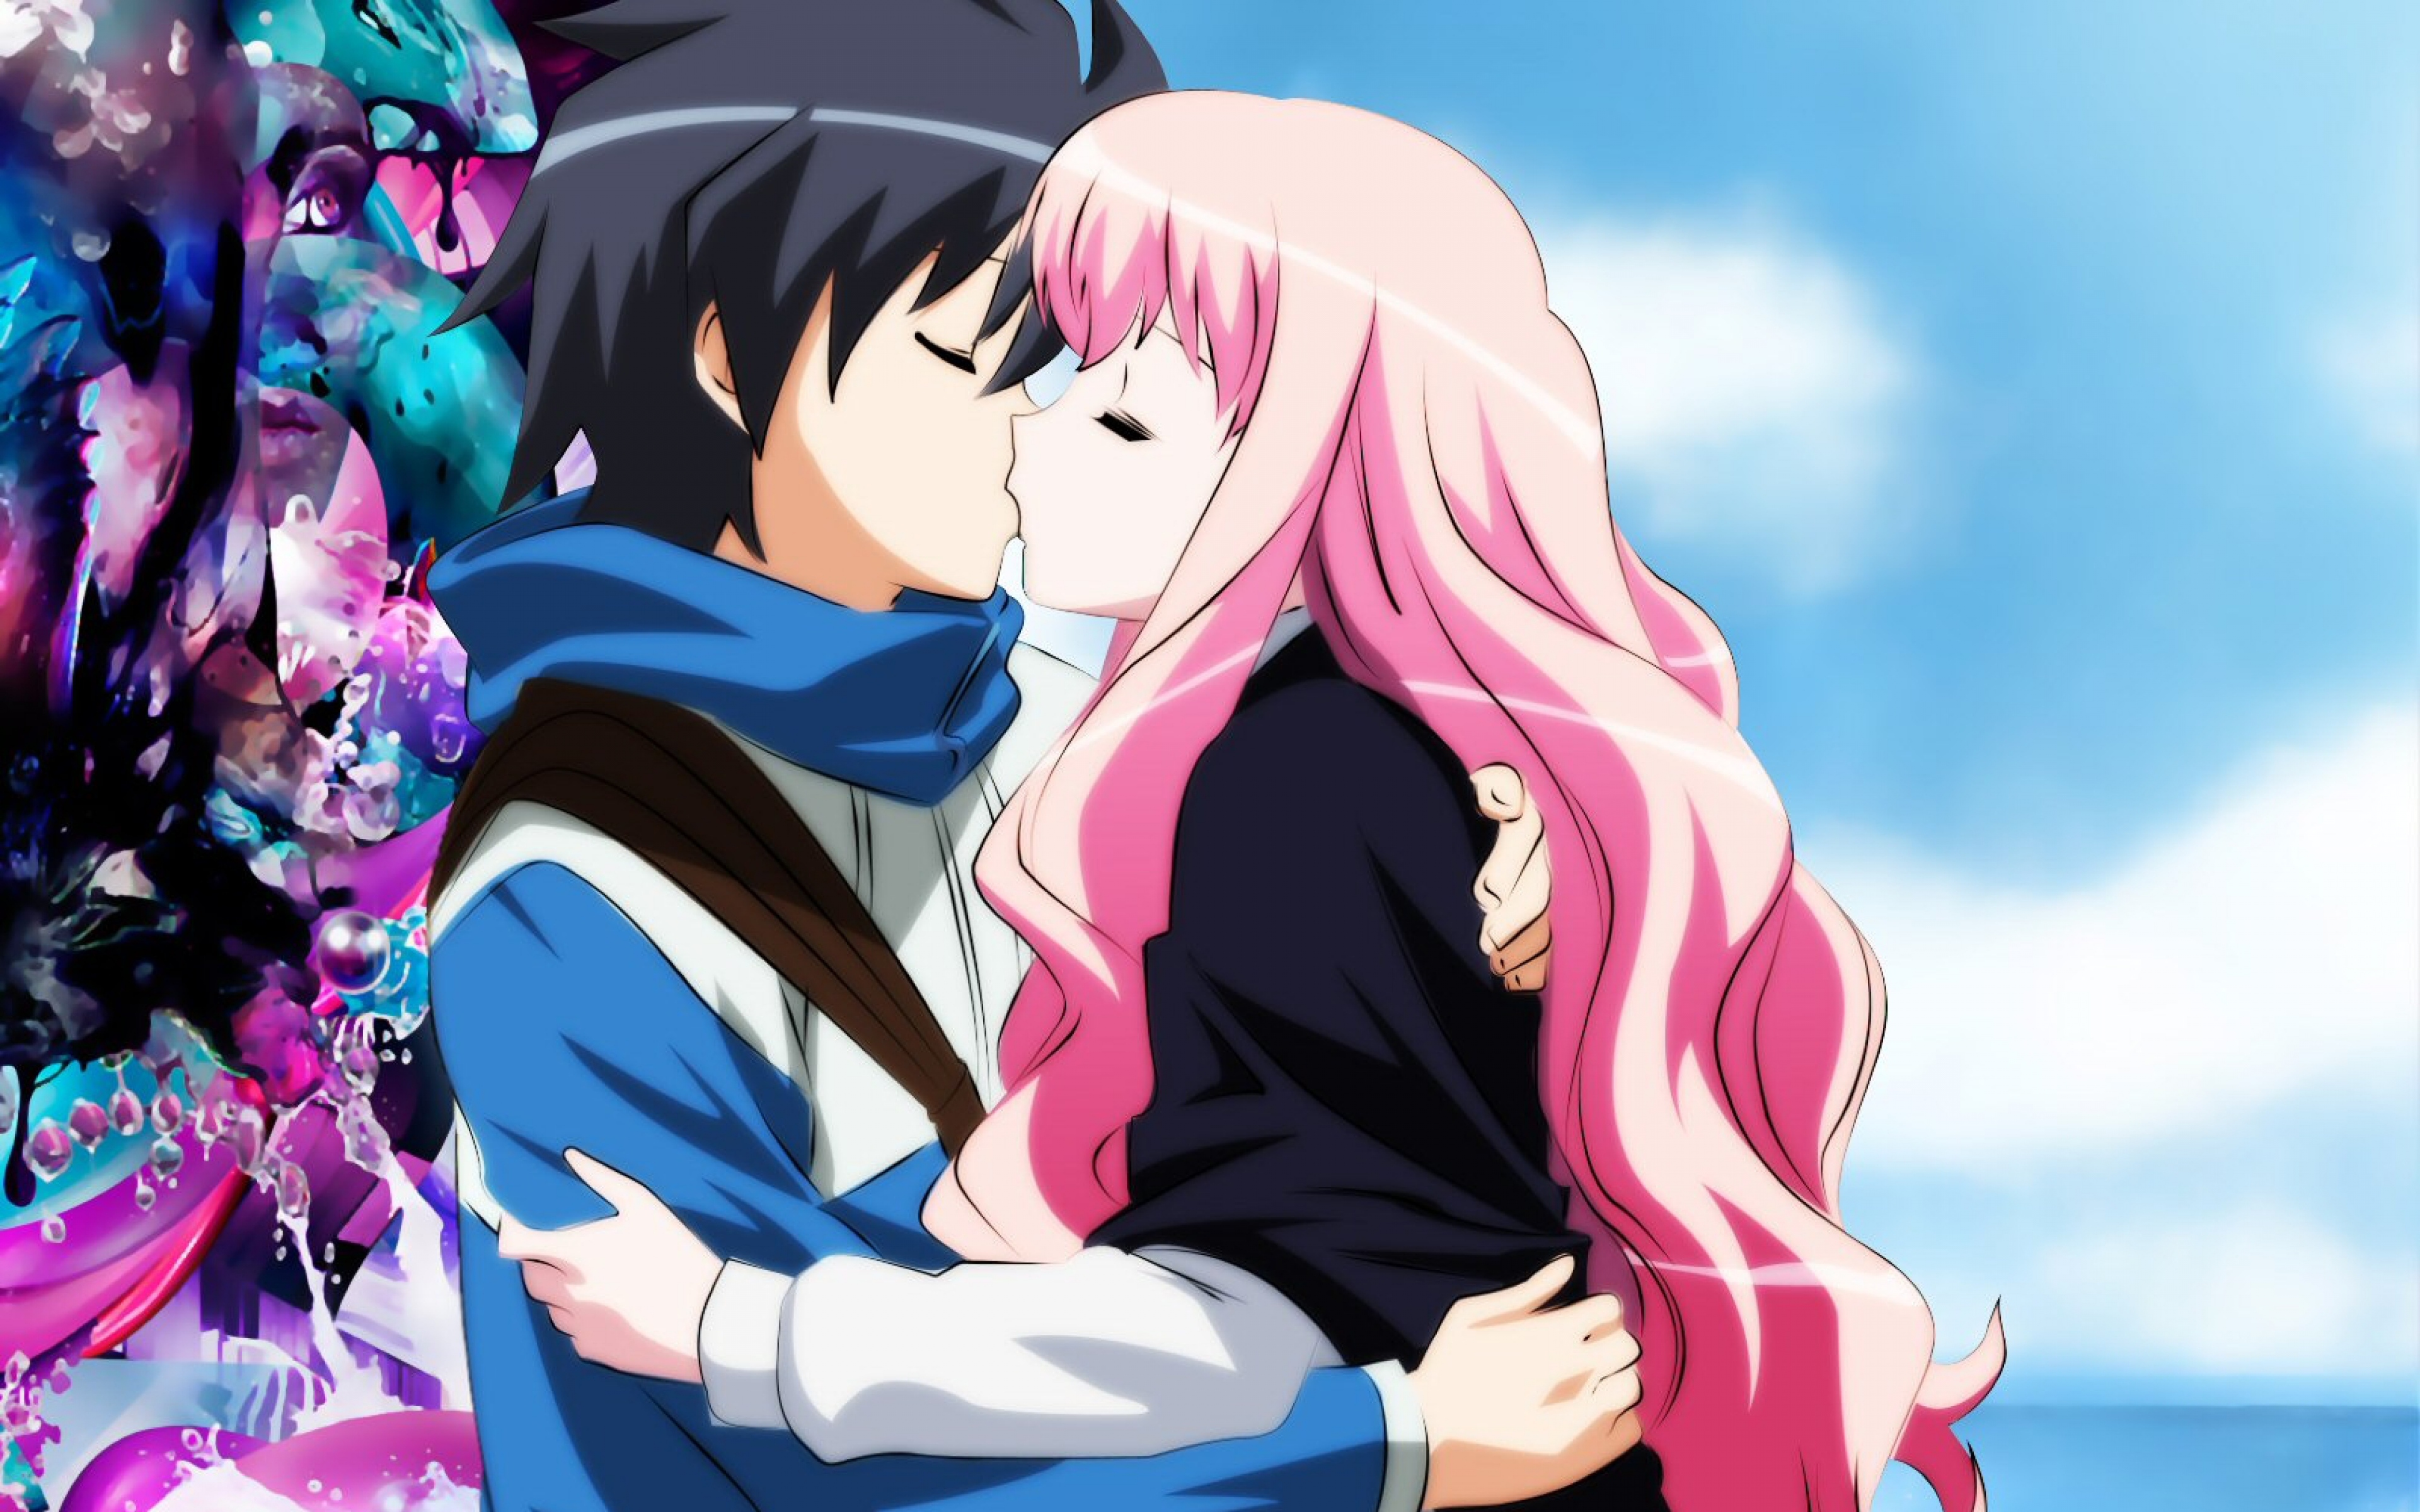 Boy, Girl, Kiss - Anime Girl And Boy Kiss - 3840x2400 Wallpaper 